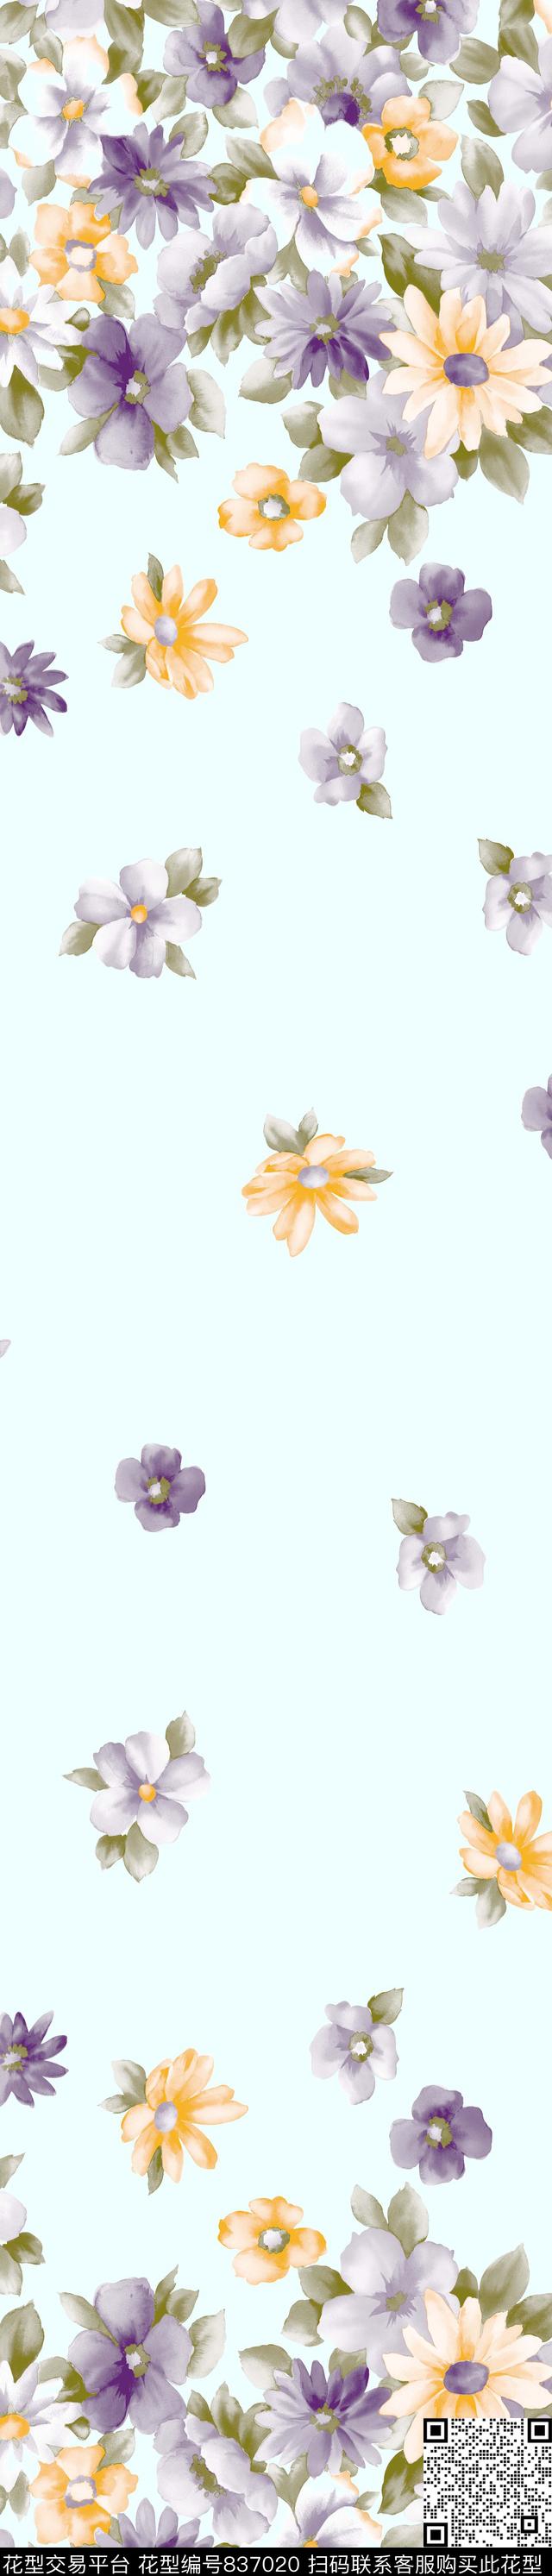 YJH170424b.jpg - 837020 - 花朵 花卉 窗帘 - 传统印花花型 － 窗帘花型设计 － 瓦栏